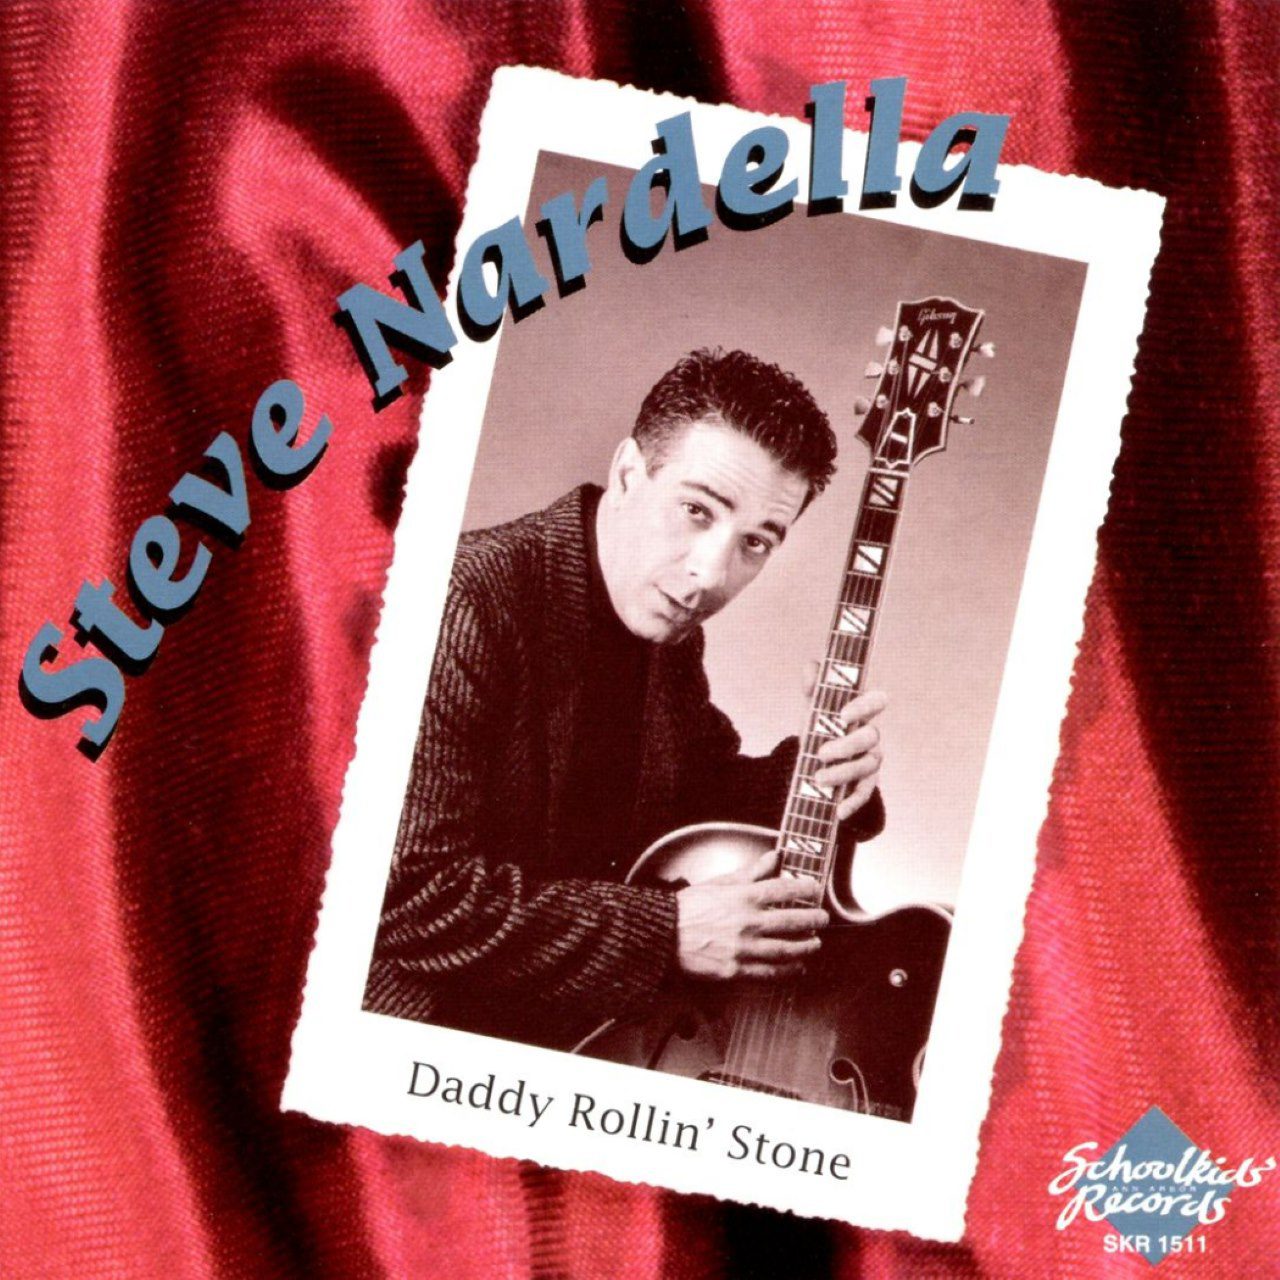 Steve Nardella – Daddy Rollin’ Stone cover album